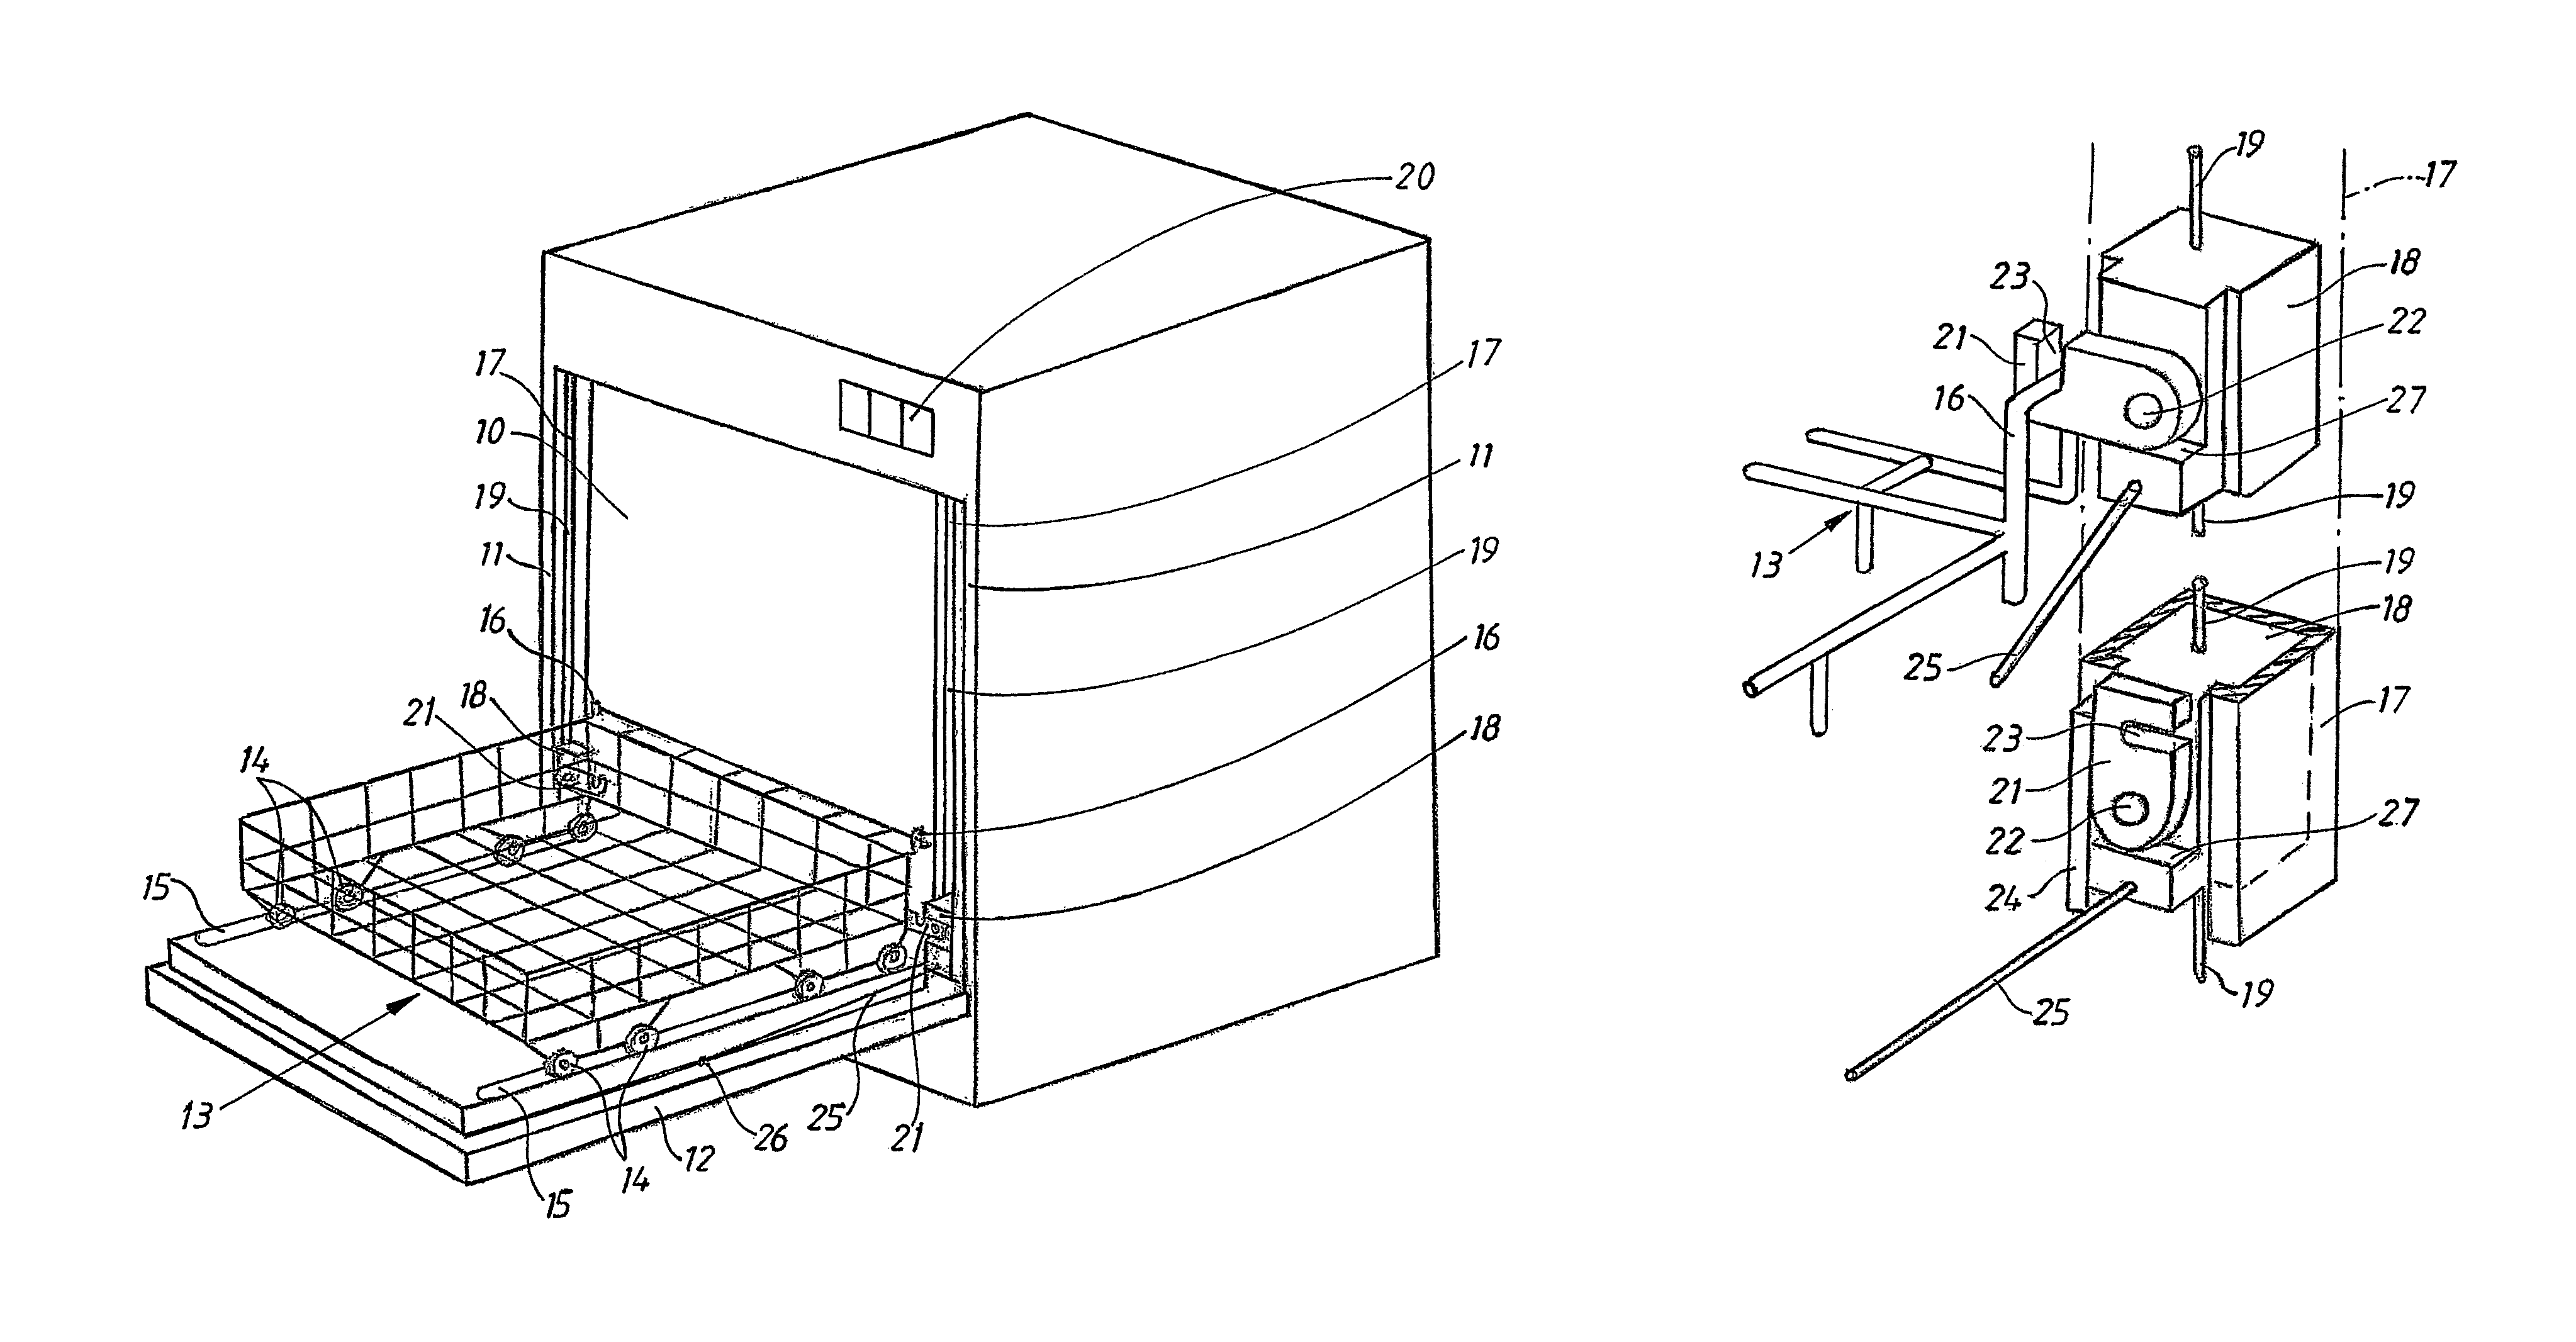 Basket lifting arrangement for a dishwasher